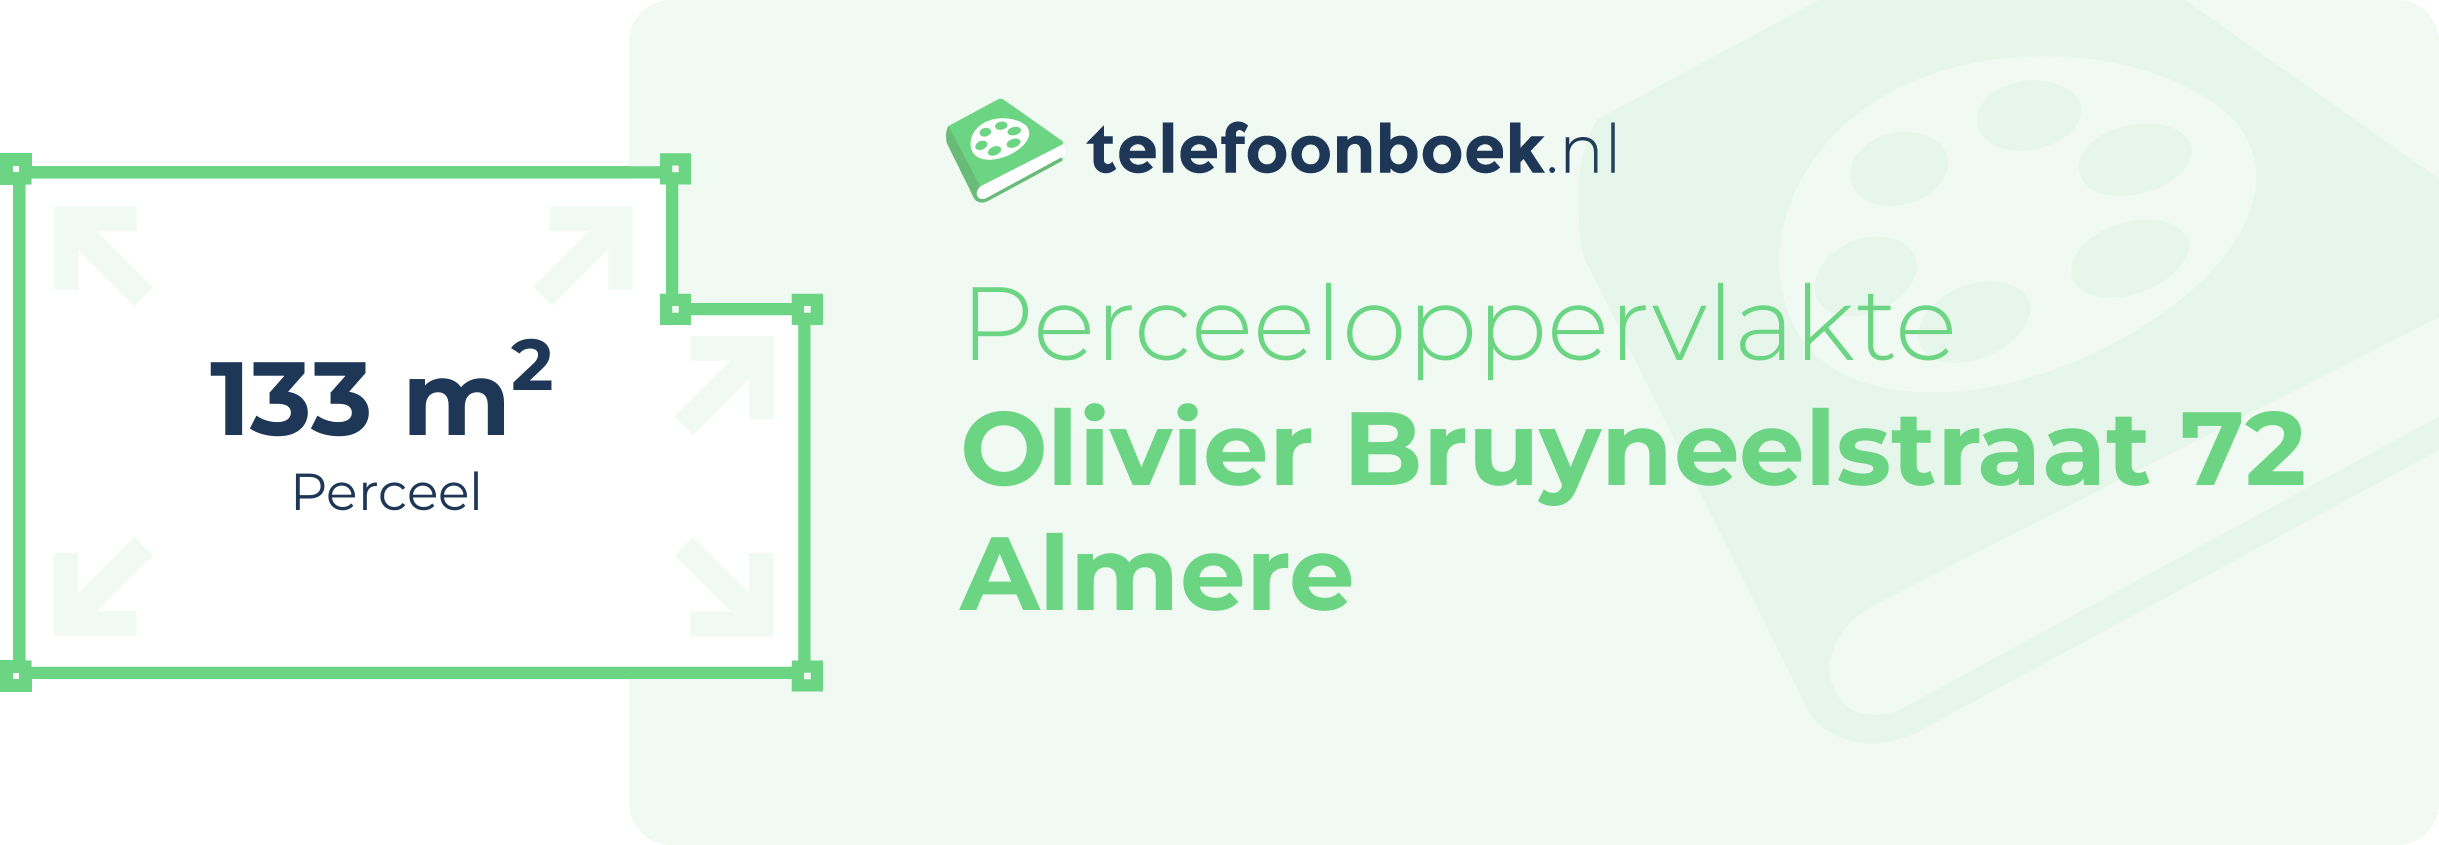 Perceeloppervlakte Olivier Bruyneelstraat 72 Almere